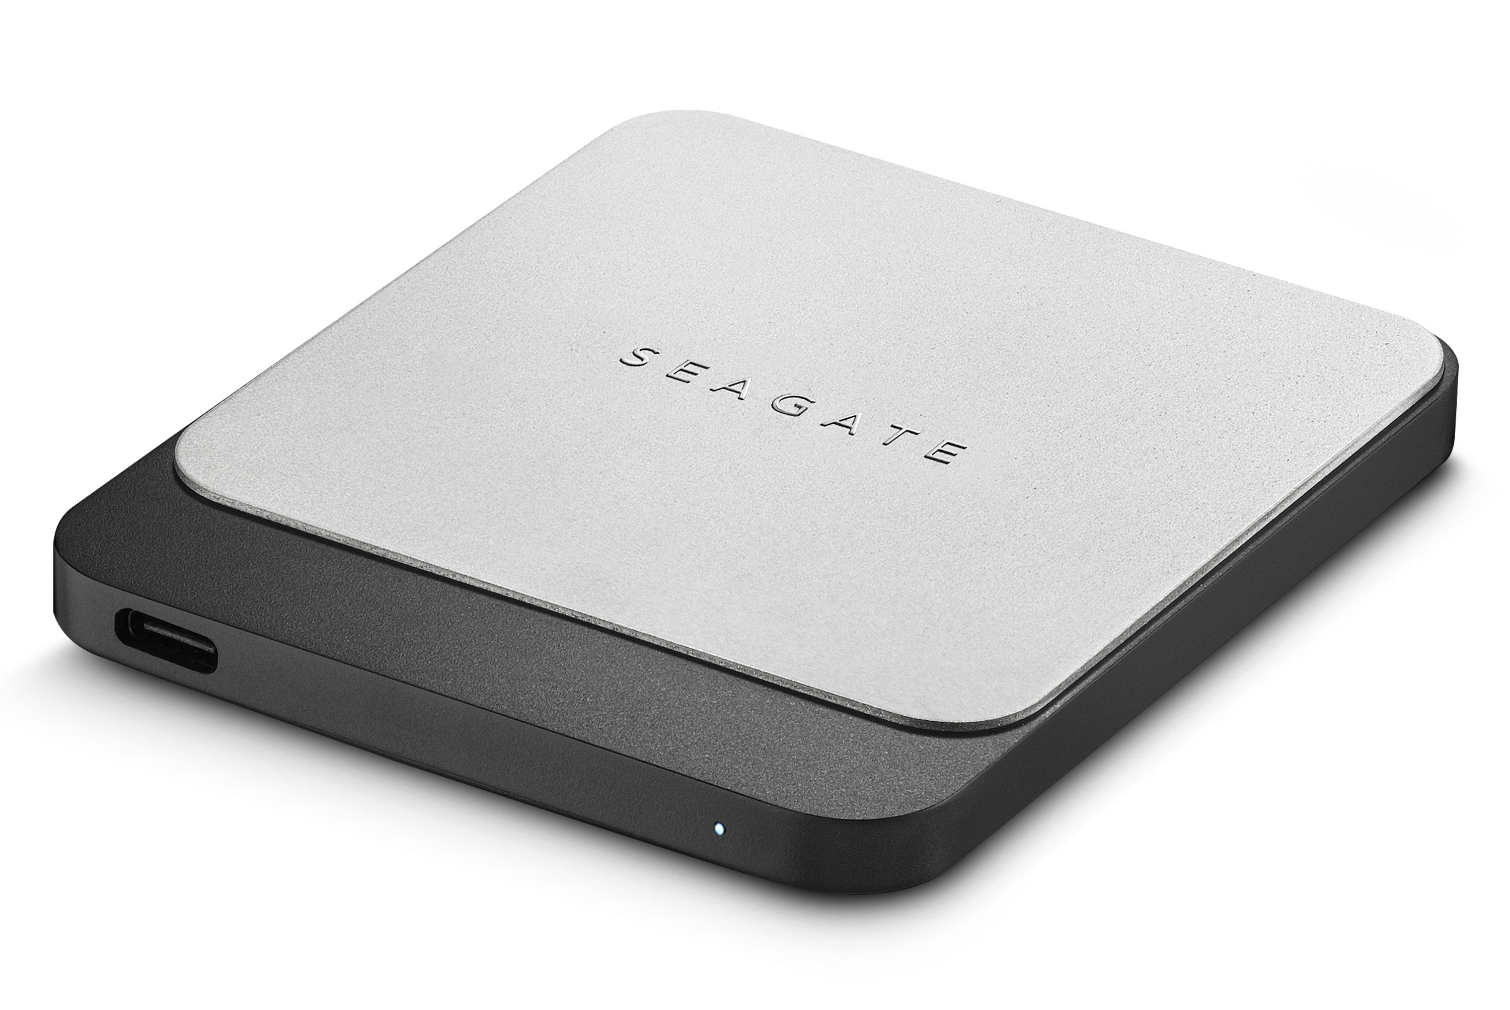 Välised SSD-d toidavad Seagate Fast SSD-d